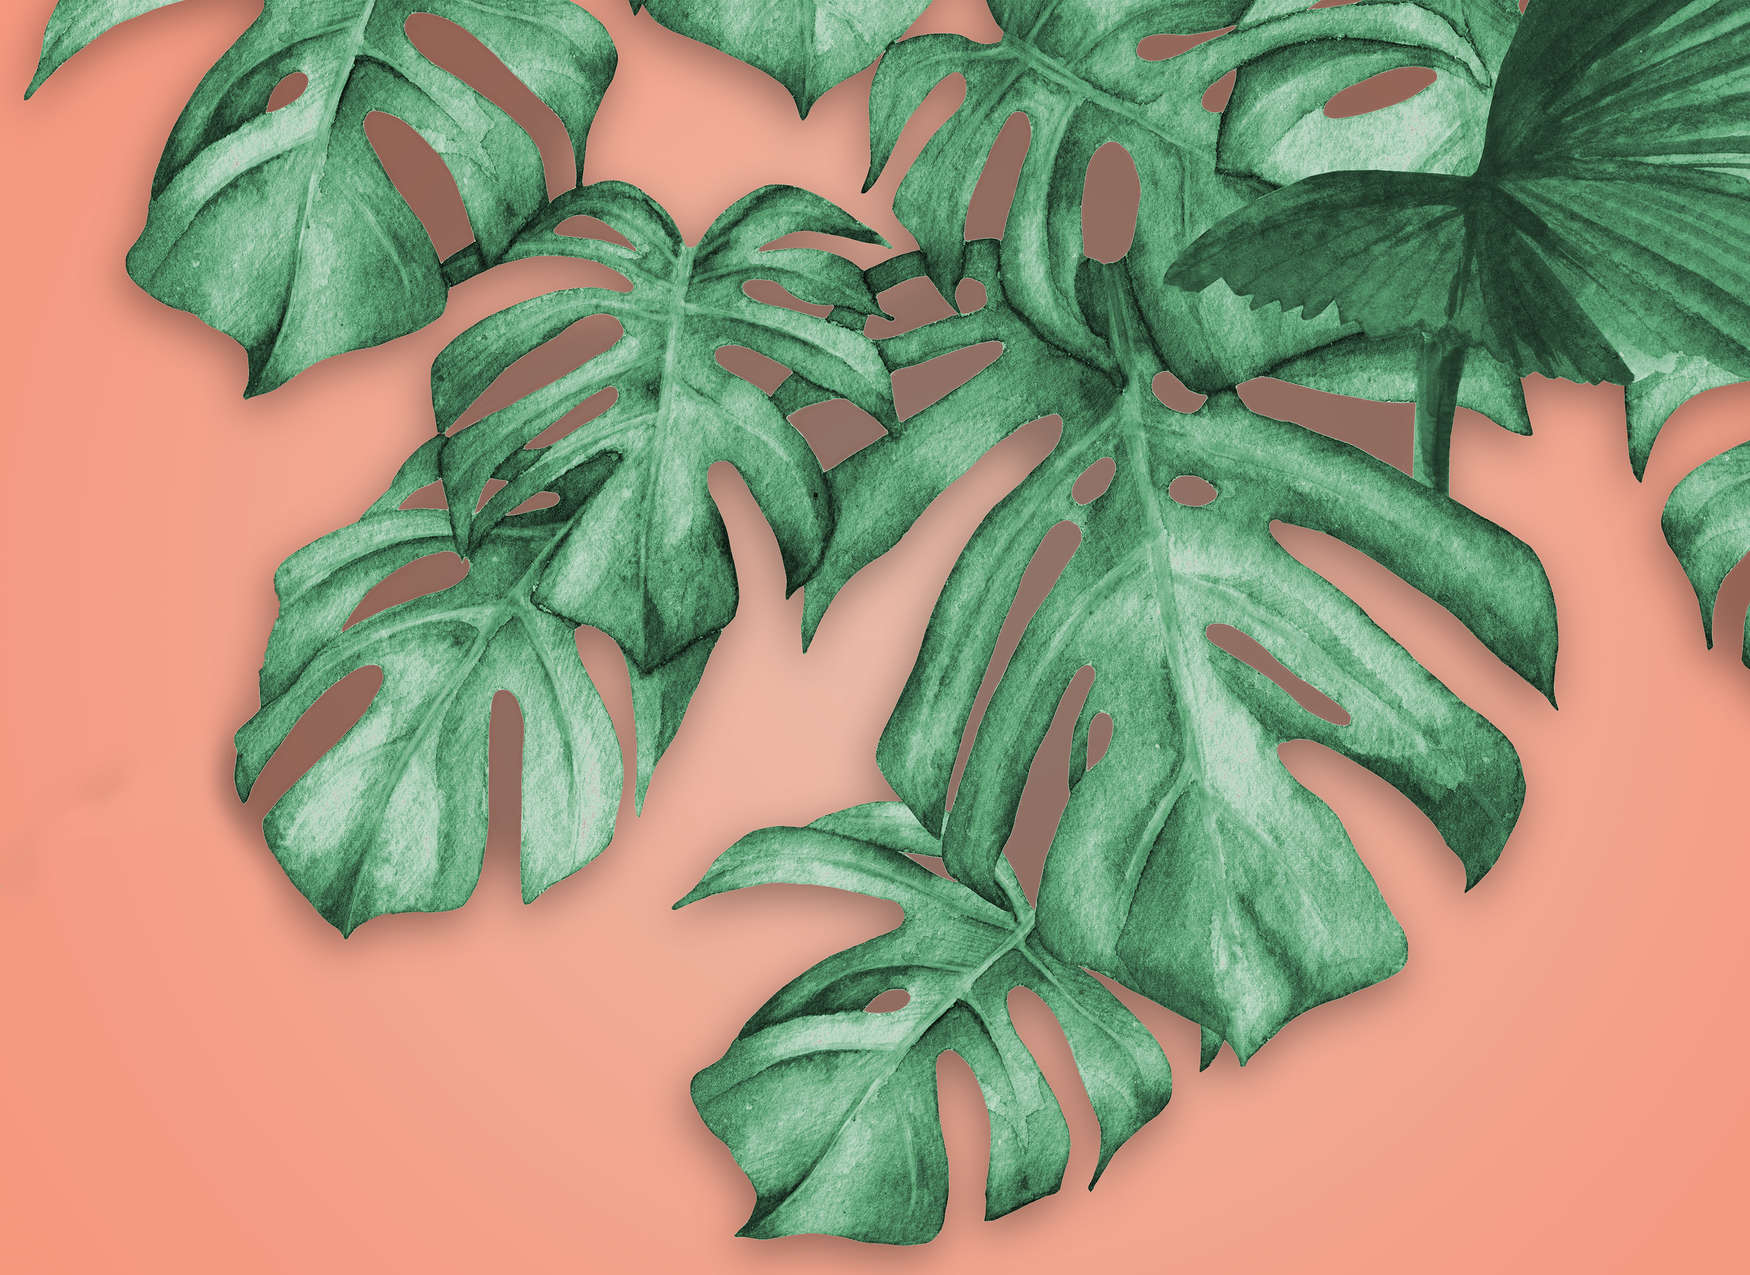             Fototapete mit tropischen Palmblätter – Grün, Orange
        